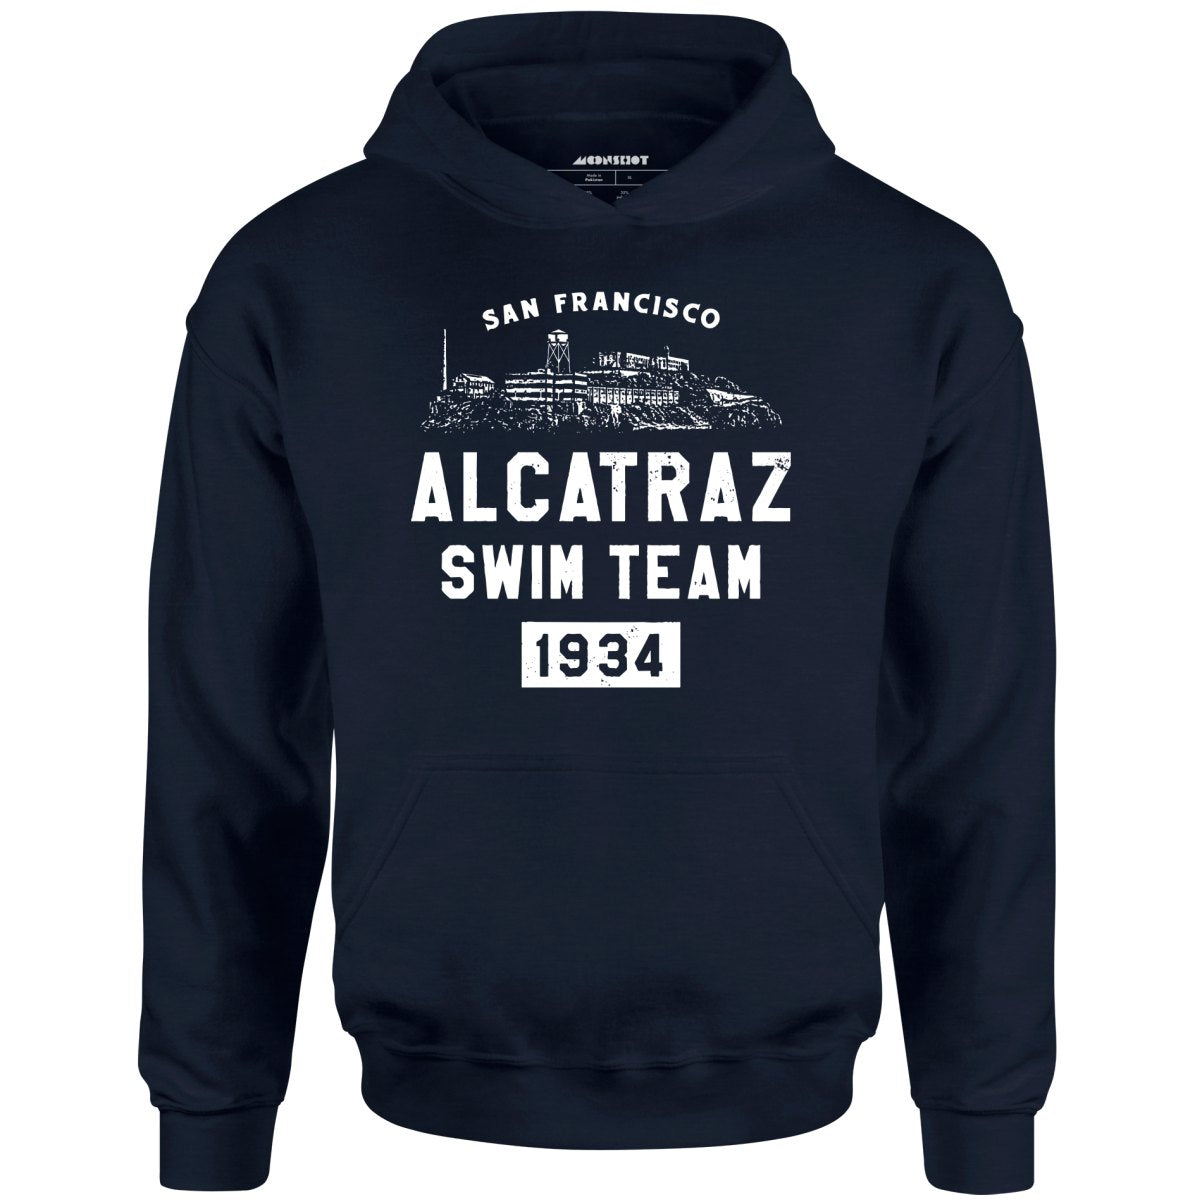 Alcatraz Swim Team - Unisex Hoodie